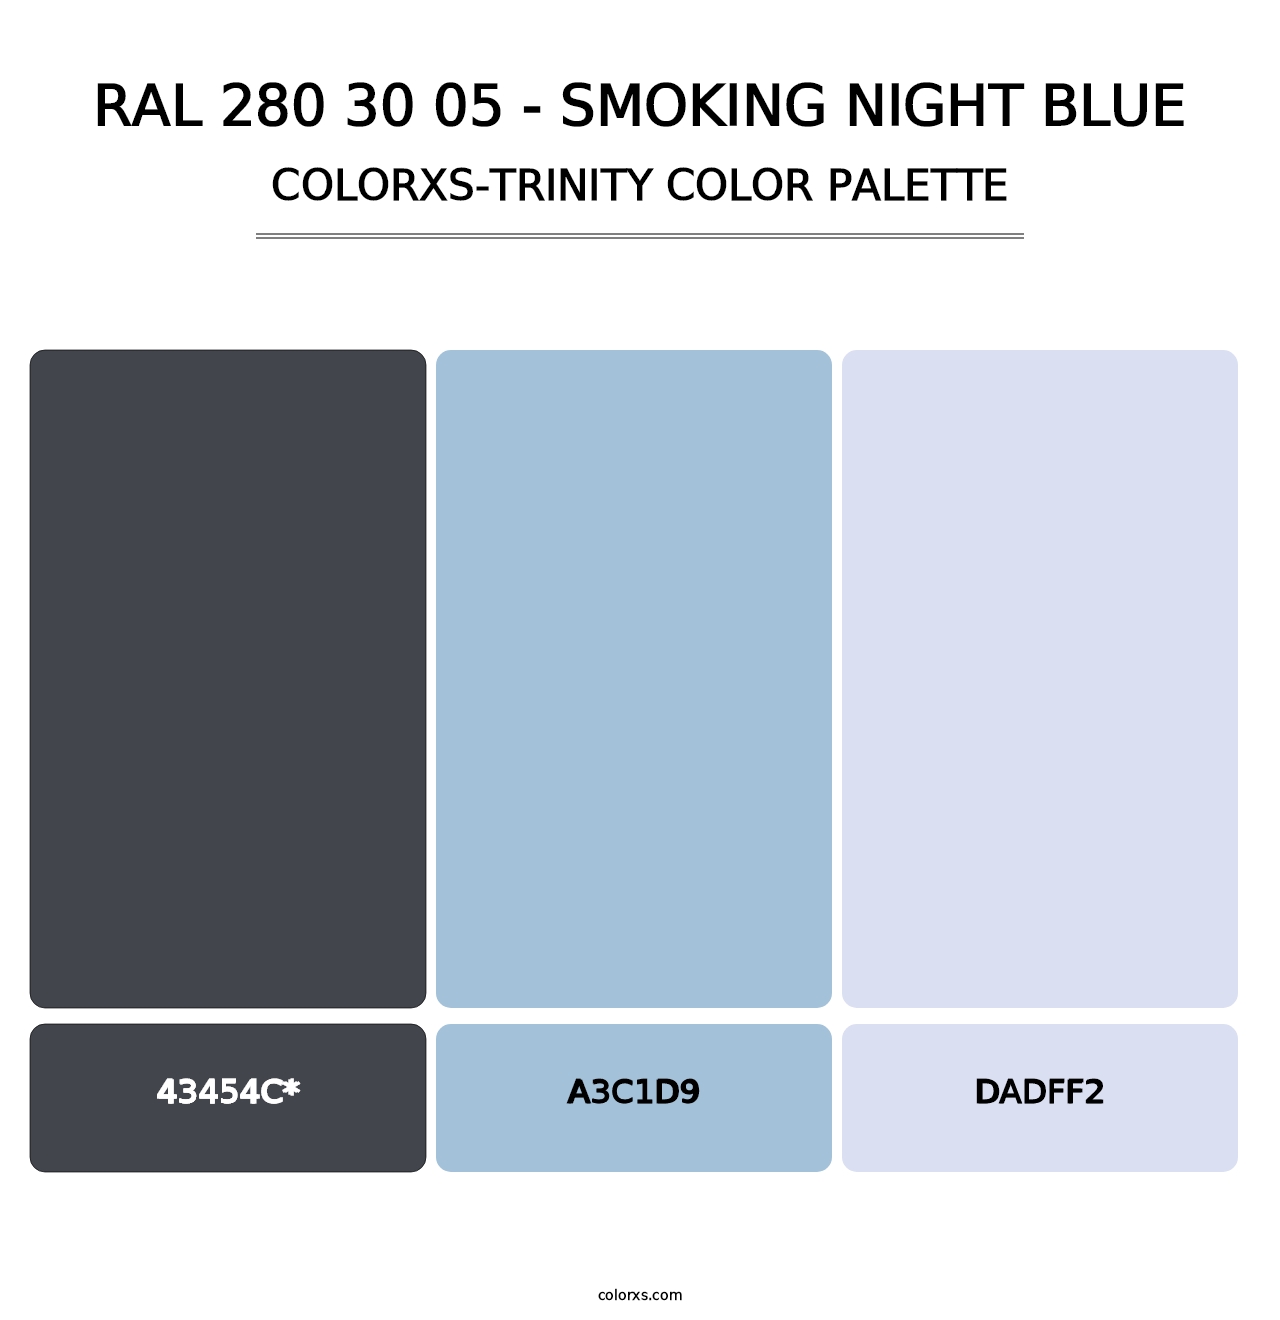 RAL 280 30 05 - Smoking Night Blue - Colorxs Trinity Palette